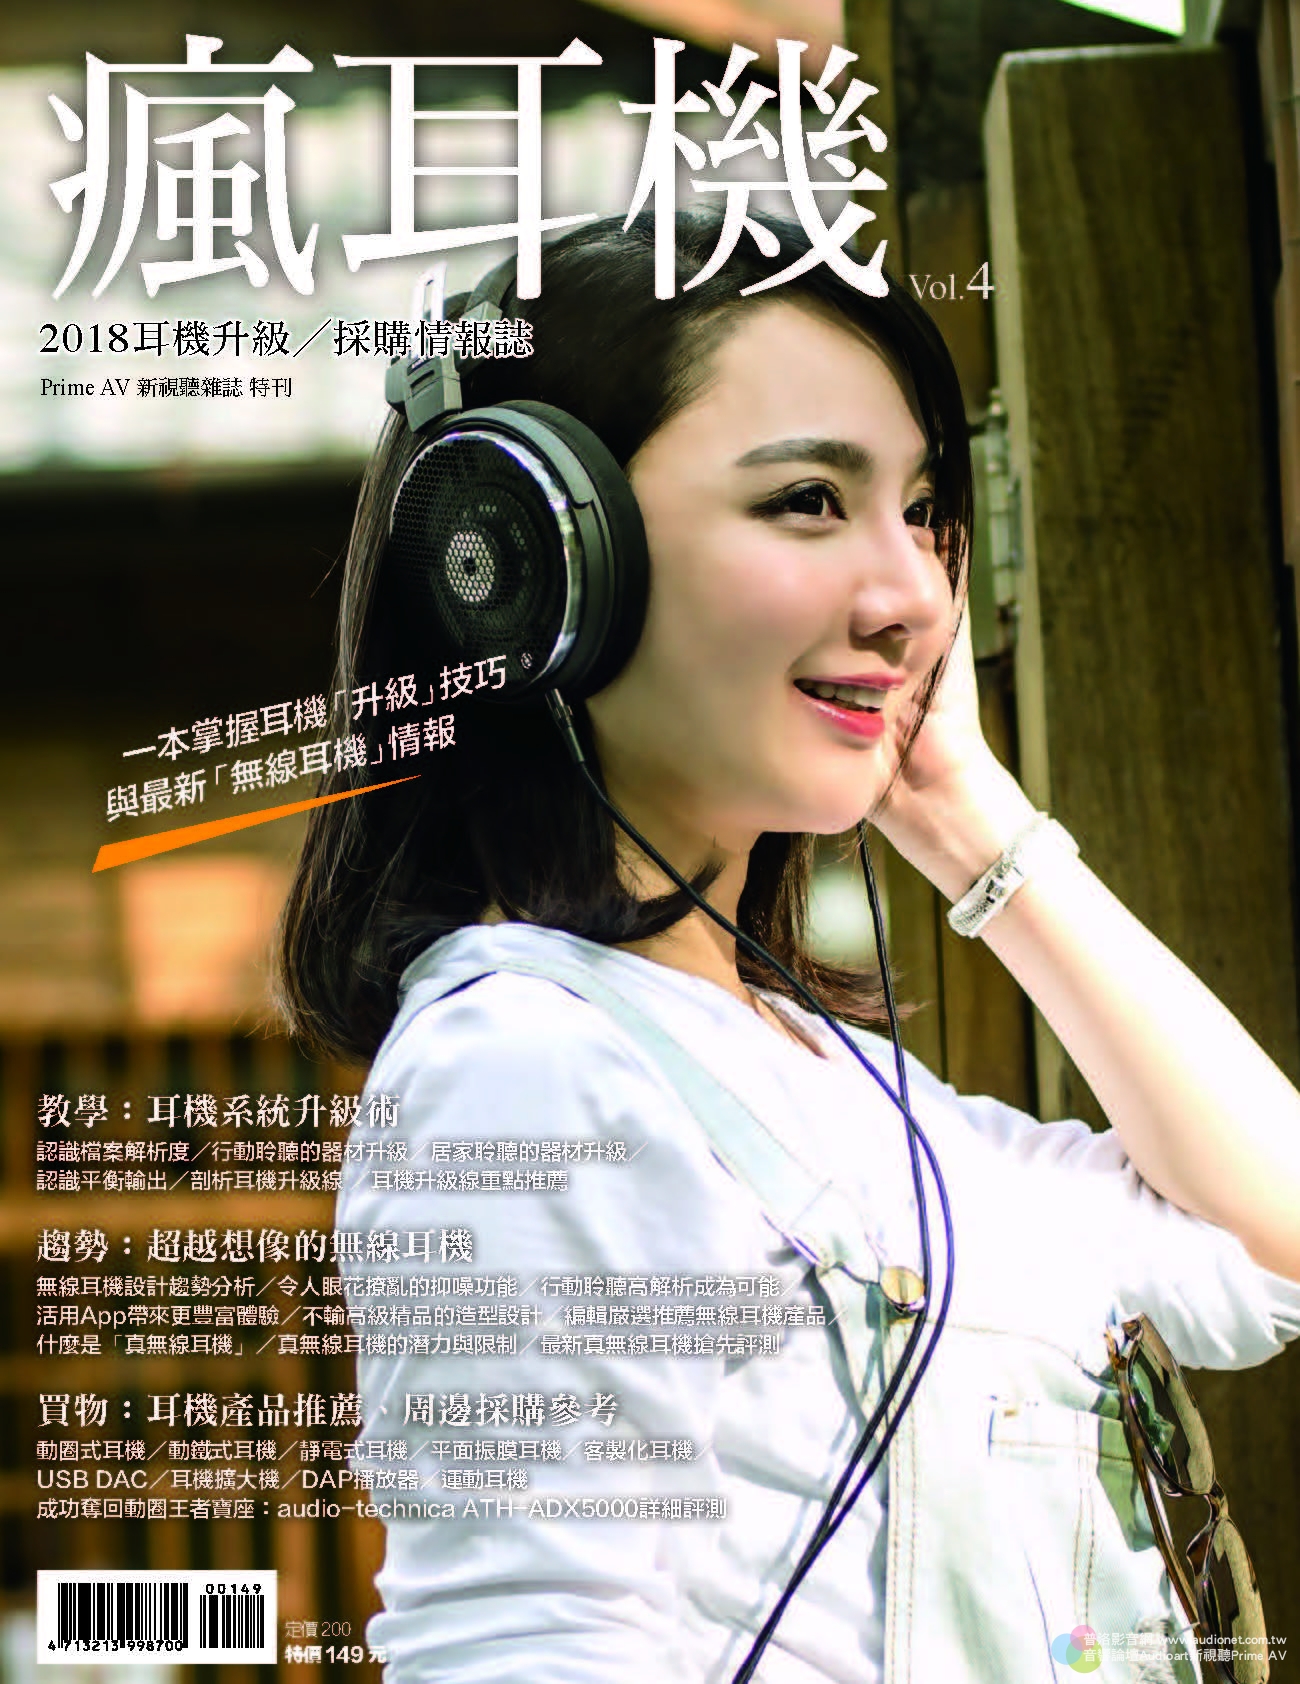 2018年耳機升級/採購情報誌第4期 瘋耳機, 台灣